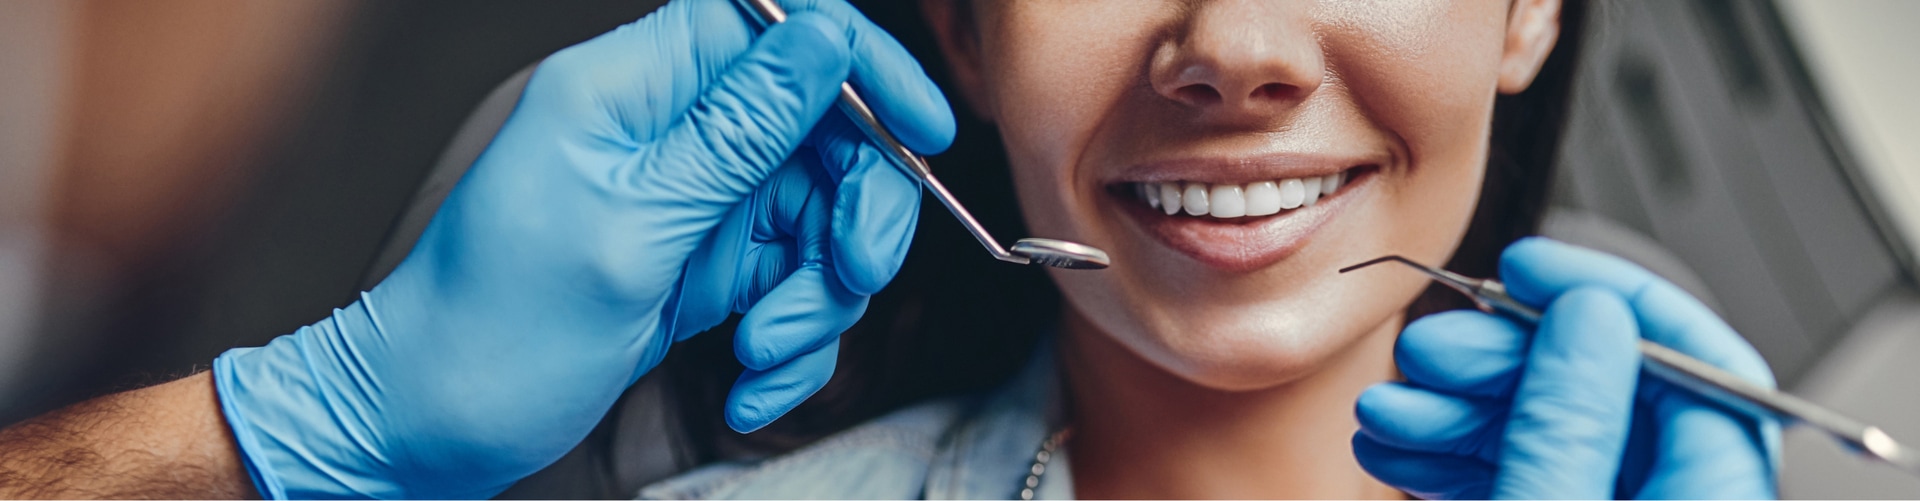 Médico dentista explorando la boca de una paciente sonriente